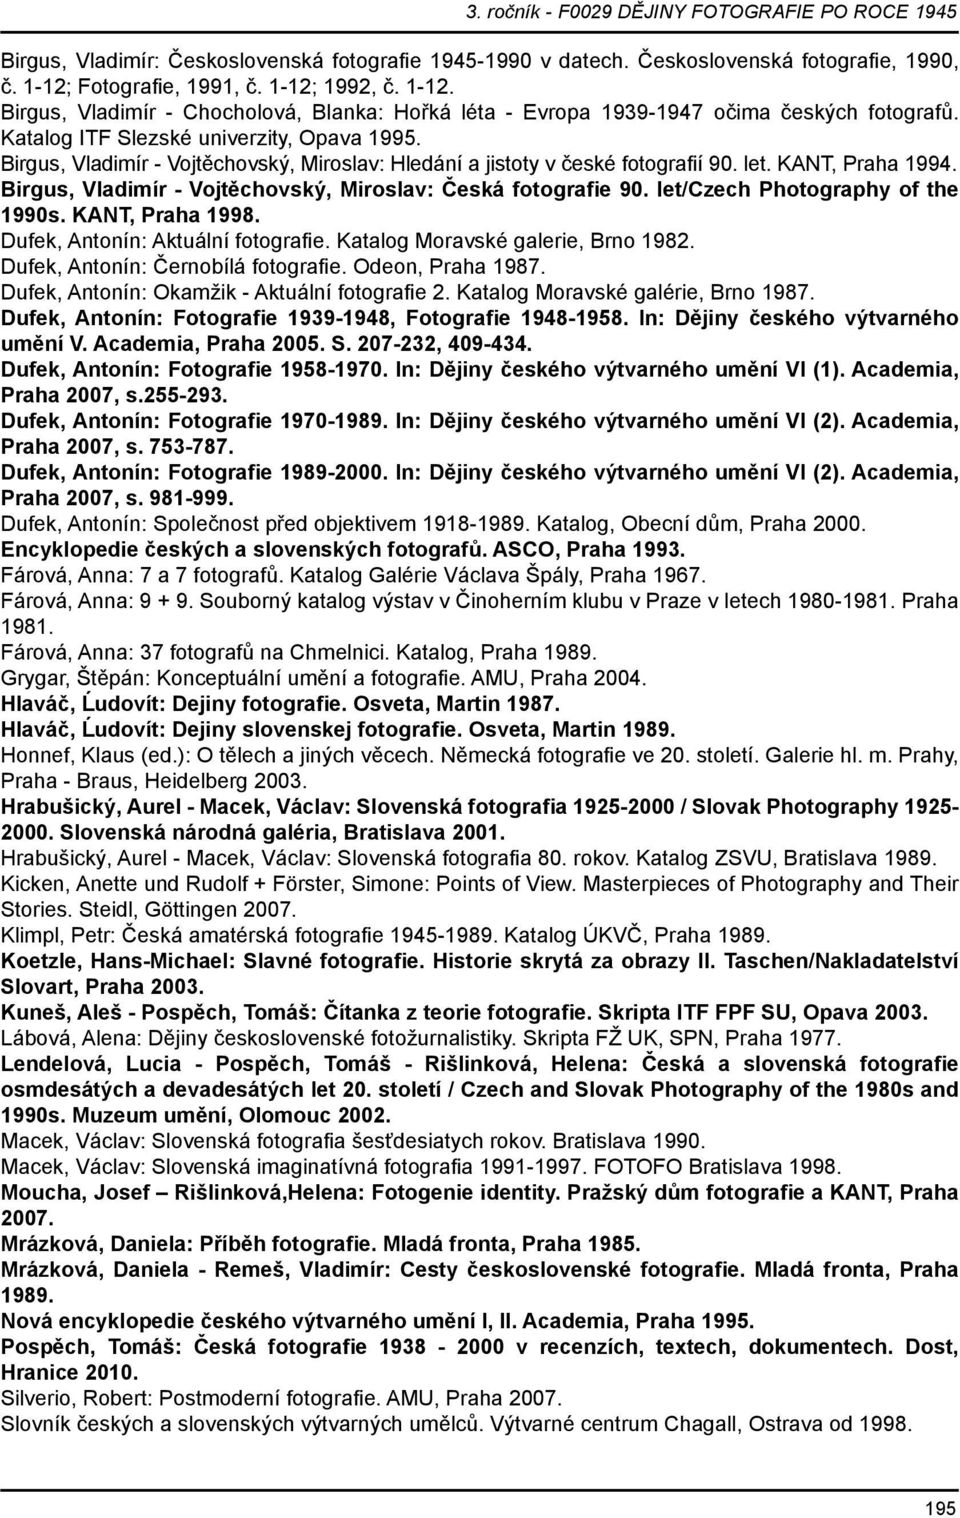 Birgus, Vladimír - Vojtěchovský, Miroslav: Česká fotografie 90. let/czech Photography of the 1990s. KANT, Praha 1998. Dufek, Antonín: Aktuální fotografie. Katalog Moravské galerie, Brno 1982.